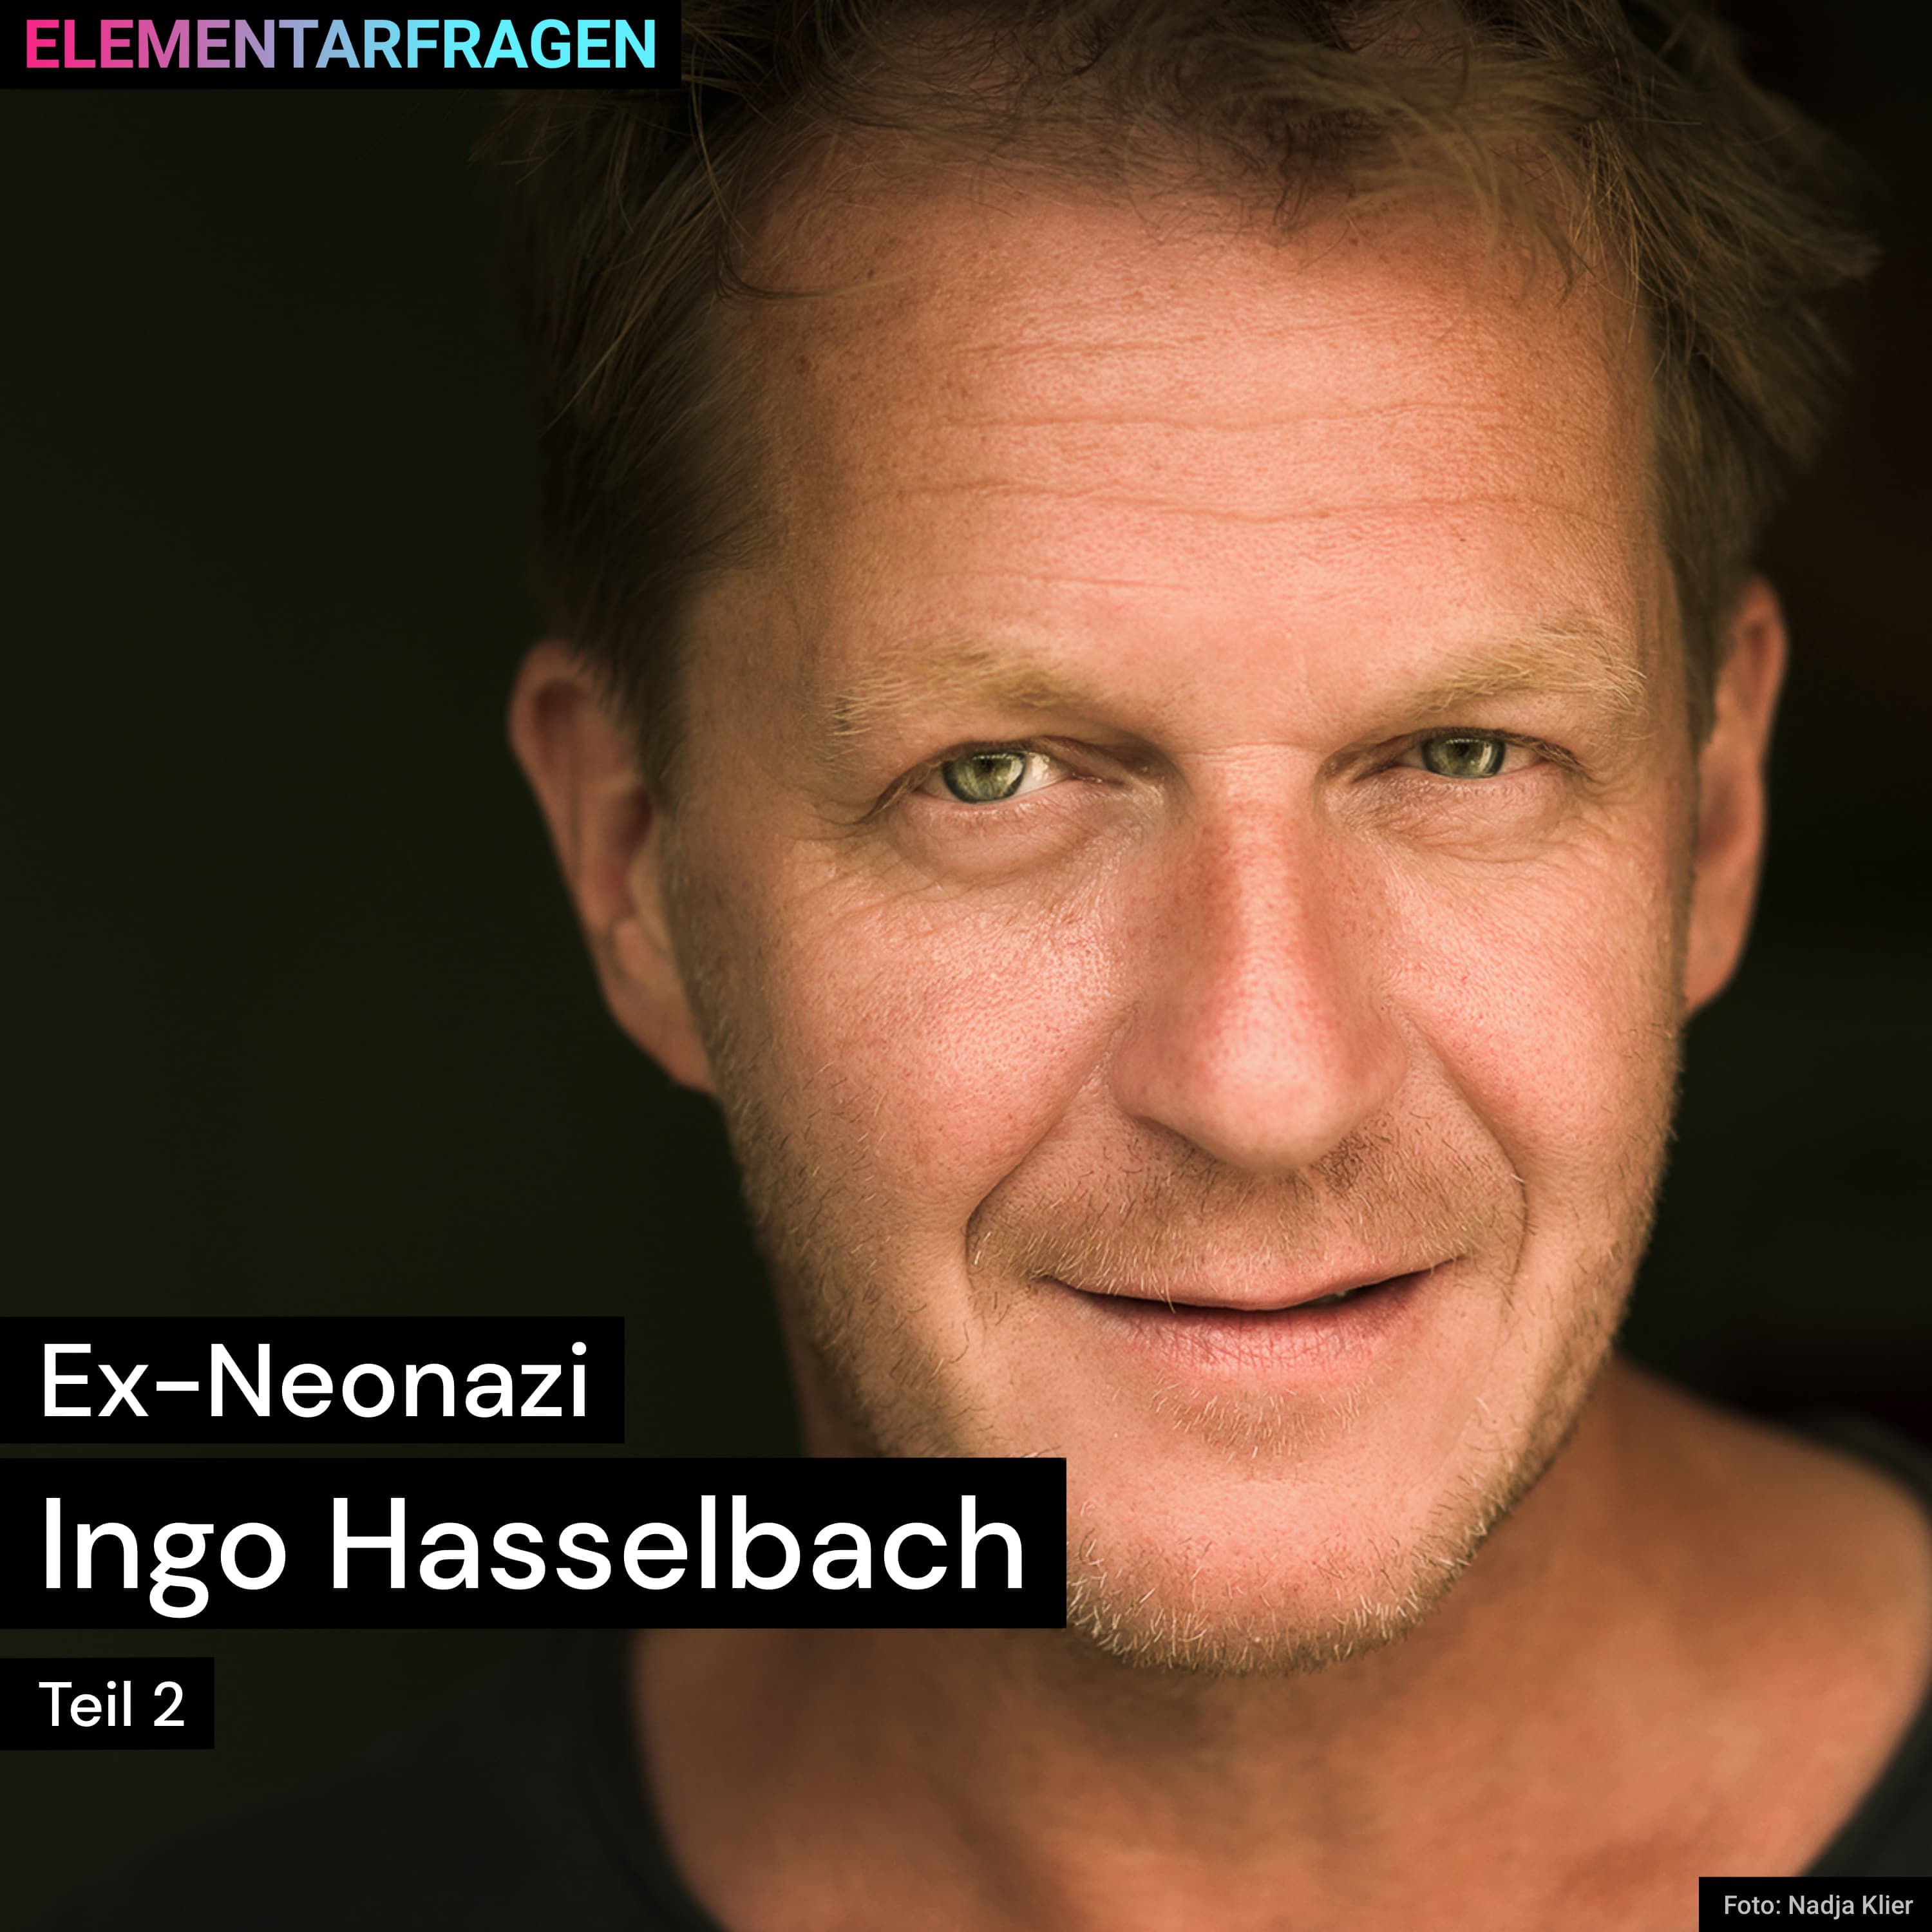 Ex-Neonazi: Ingo Hasselbach (Teil 2) | Elementarfragen